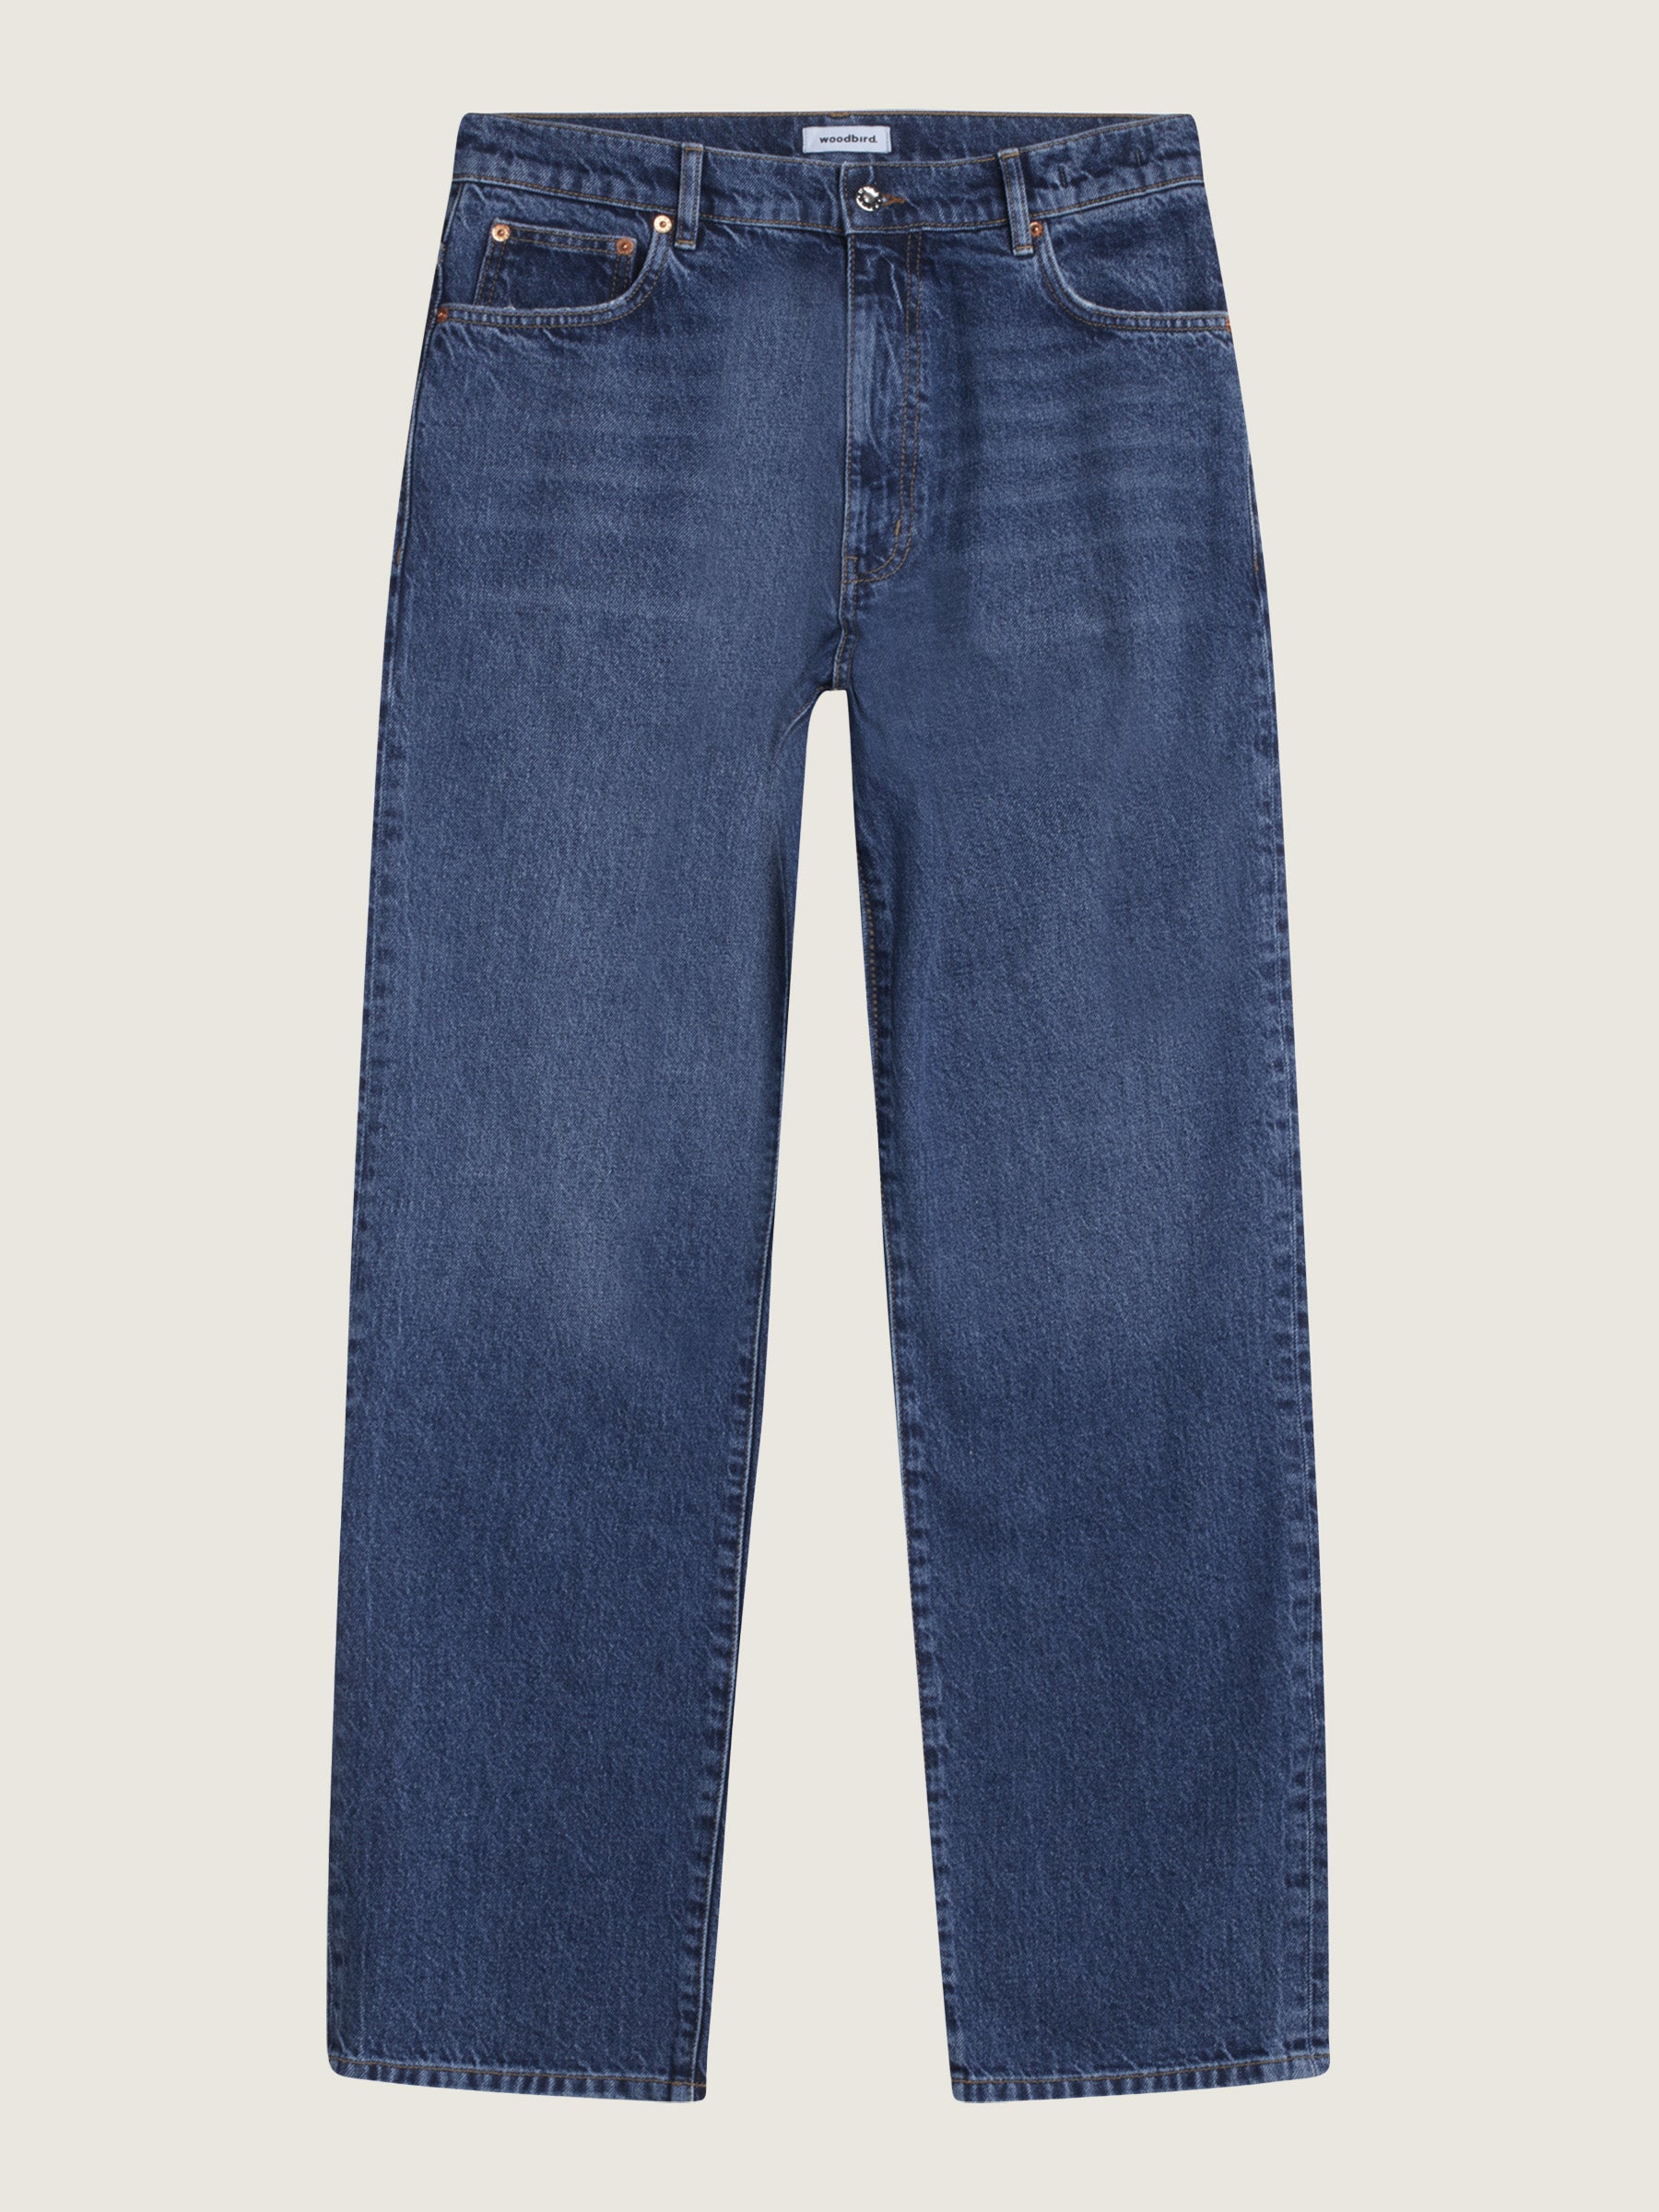 Woodbird Leroy Blooke Jeans Jeans Blue Stone